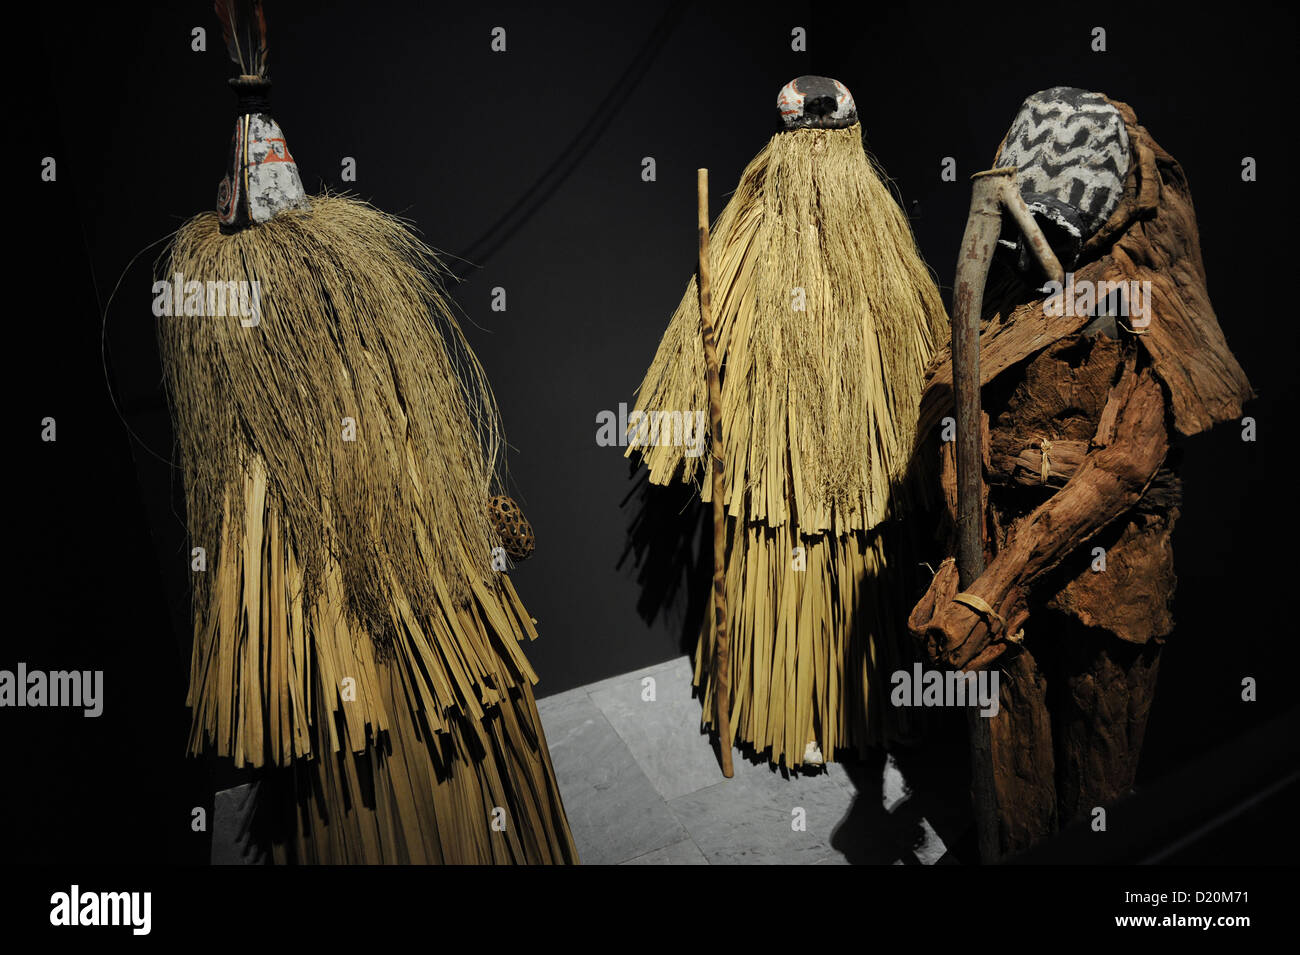 Piaroa de máscaras ceremoniales. Venezuela. Museo Etnográfico. Budapest. Hungría. Foto de stock